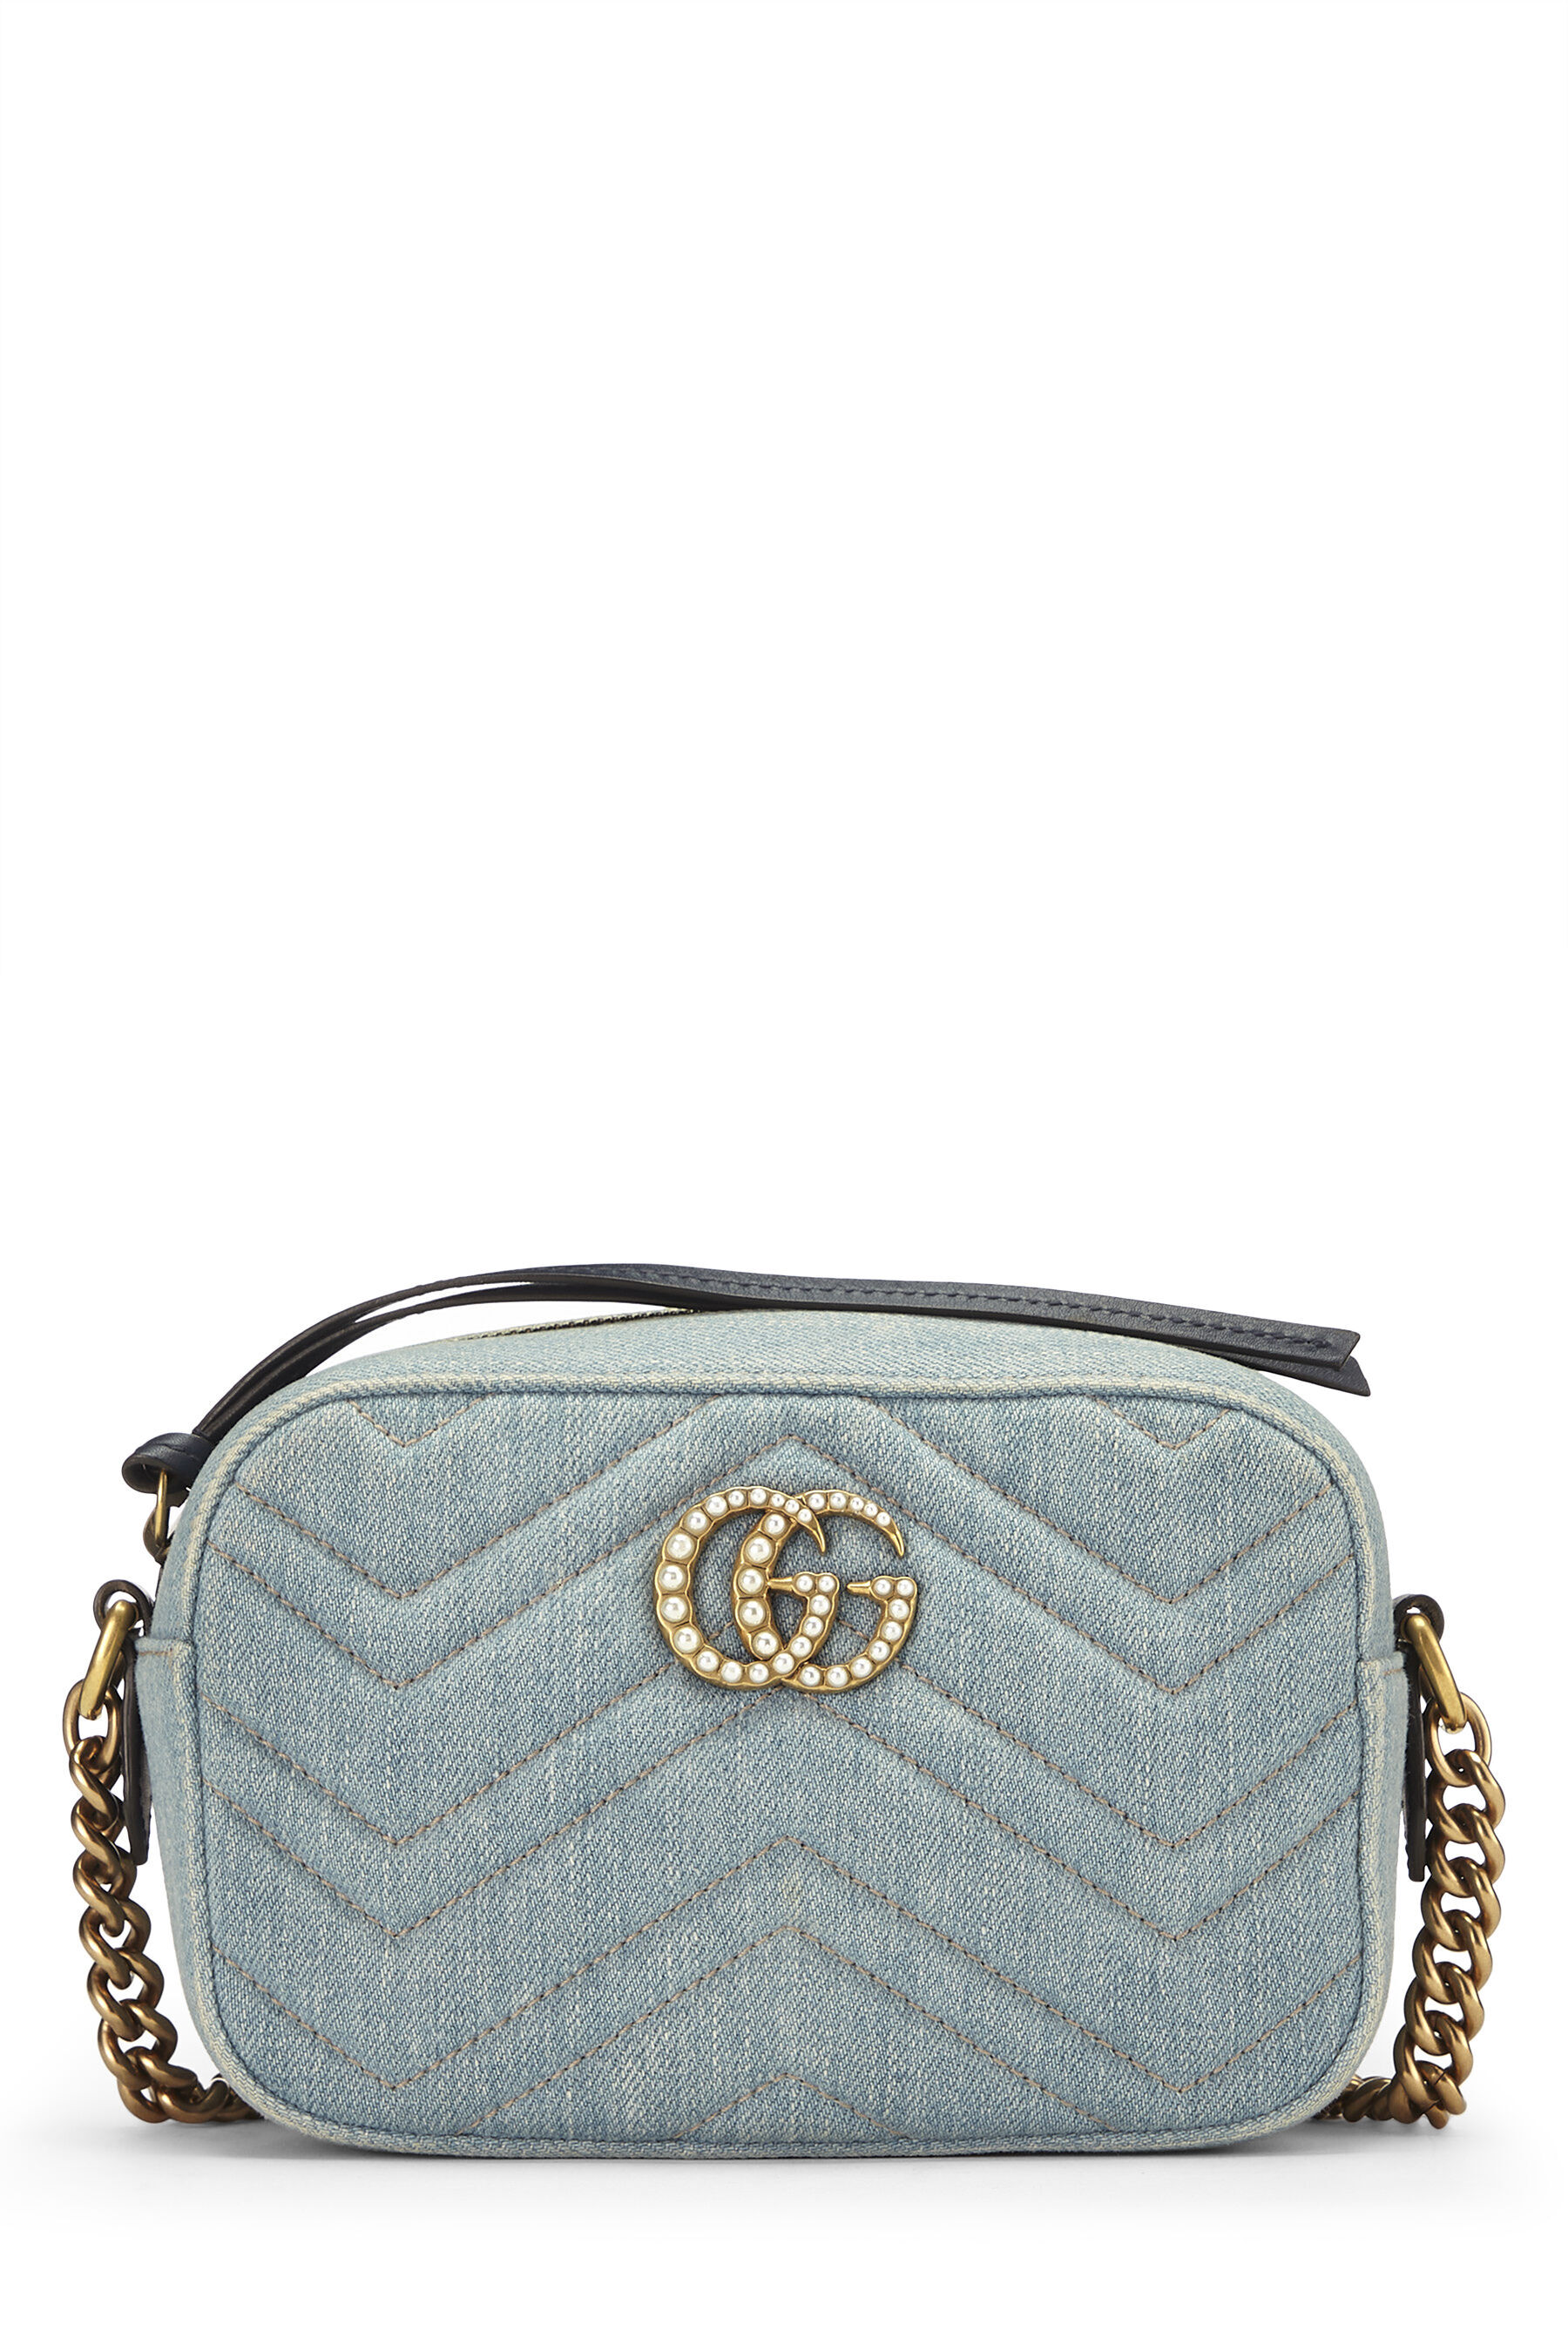 Gucci Blue Matelasse Denim Pearl Embellished GG Marmont Shoulder Bag Gucci  | TLC